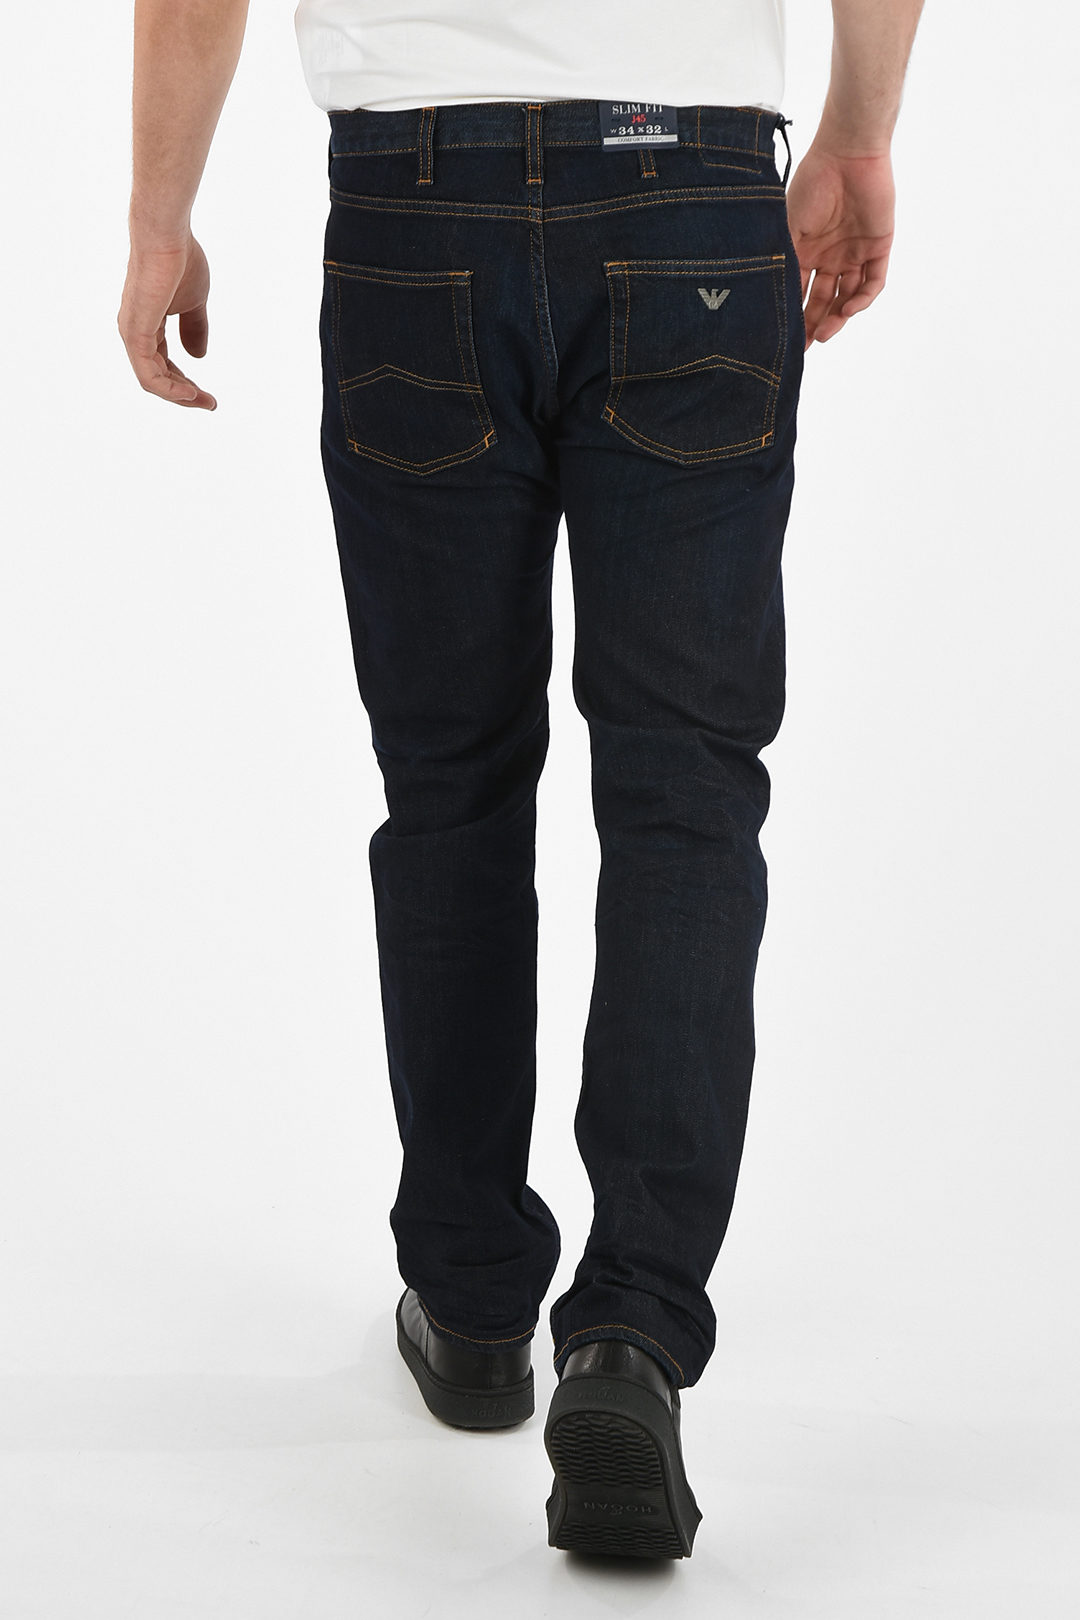 valgfri Bloom markedsføring Armani ARMANI JEANS 20cm Slim Fit J45 Jeans L32 men - Glamood Outlet